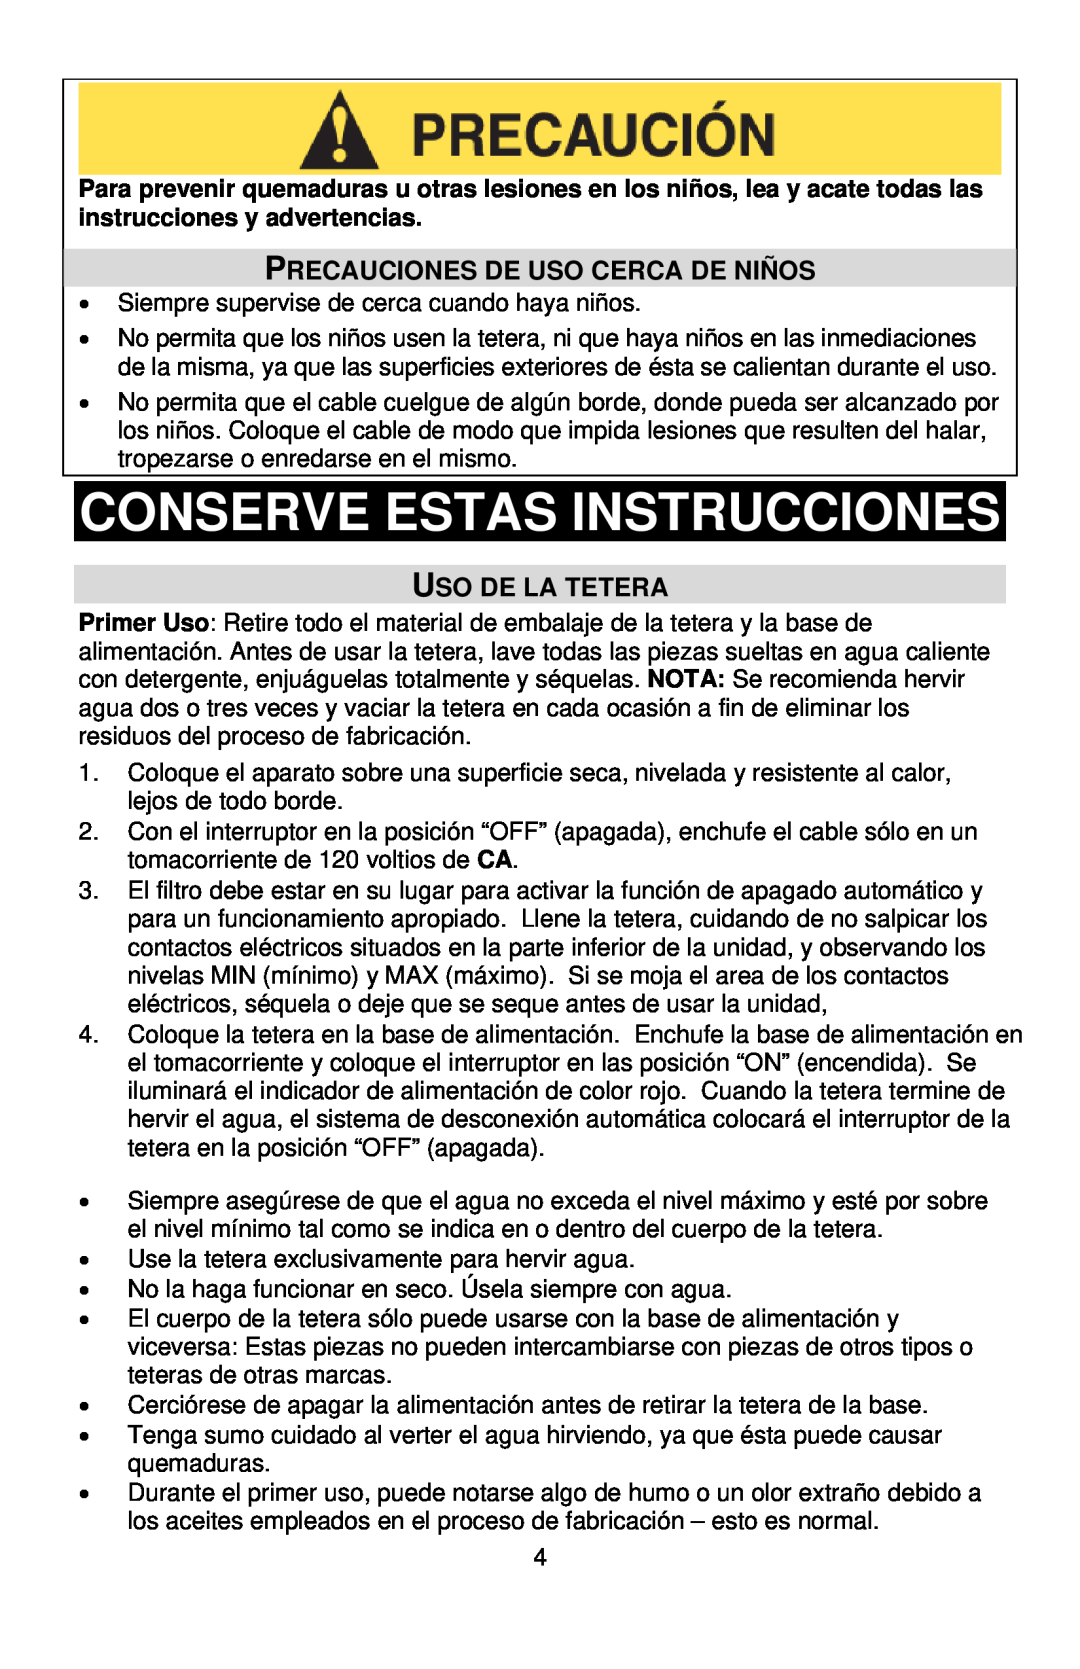 West Bend 53783 instruction manual Conserve Estas Instrucciones, Precauciones De Uso Cerca De Niños, Uso De La Tetera 